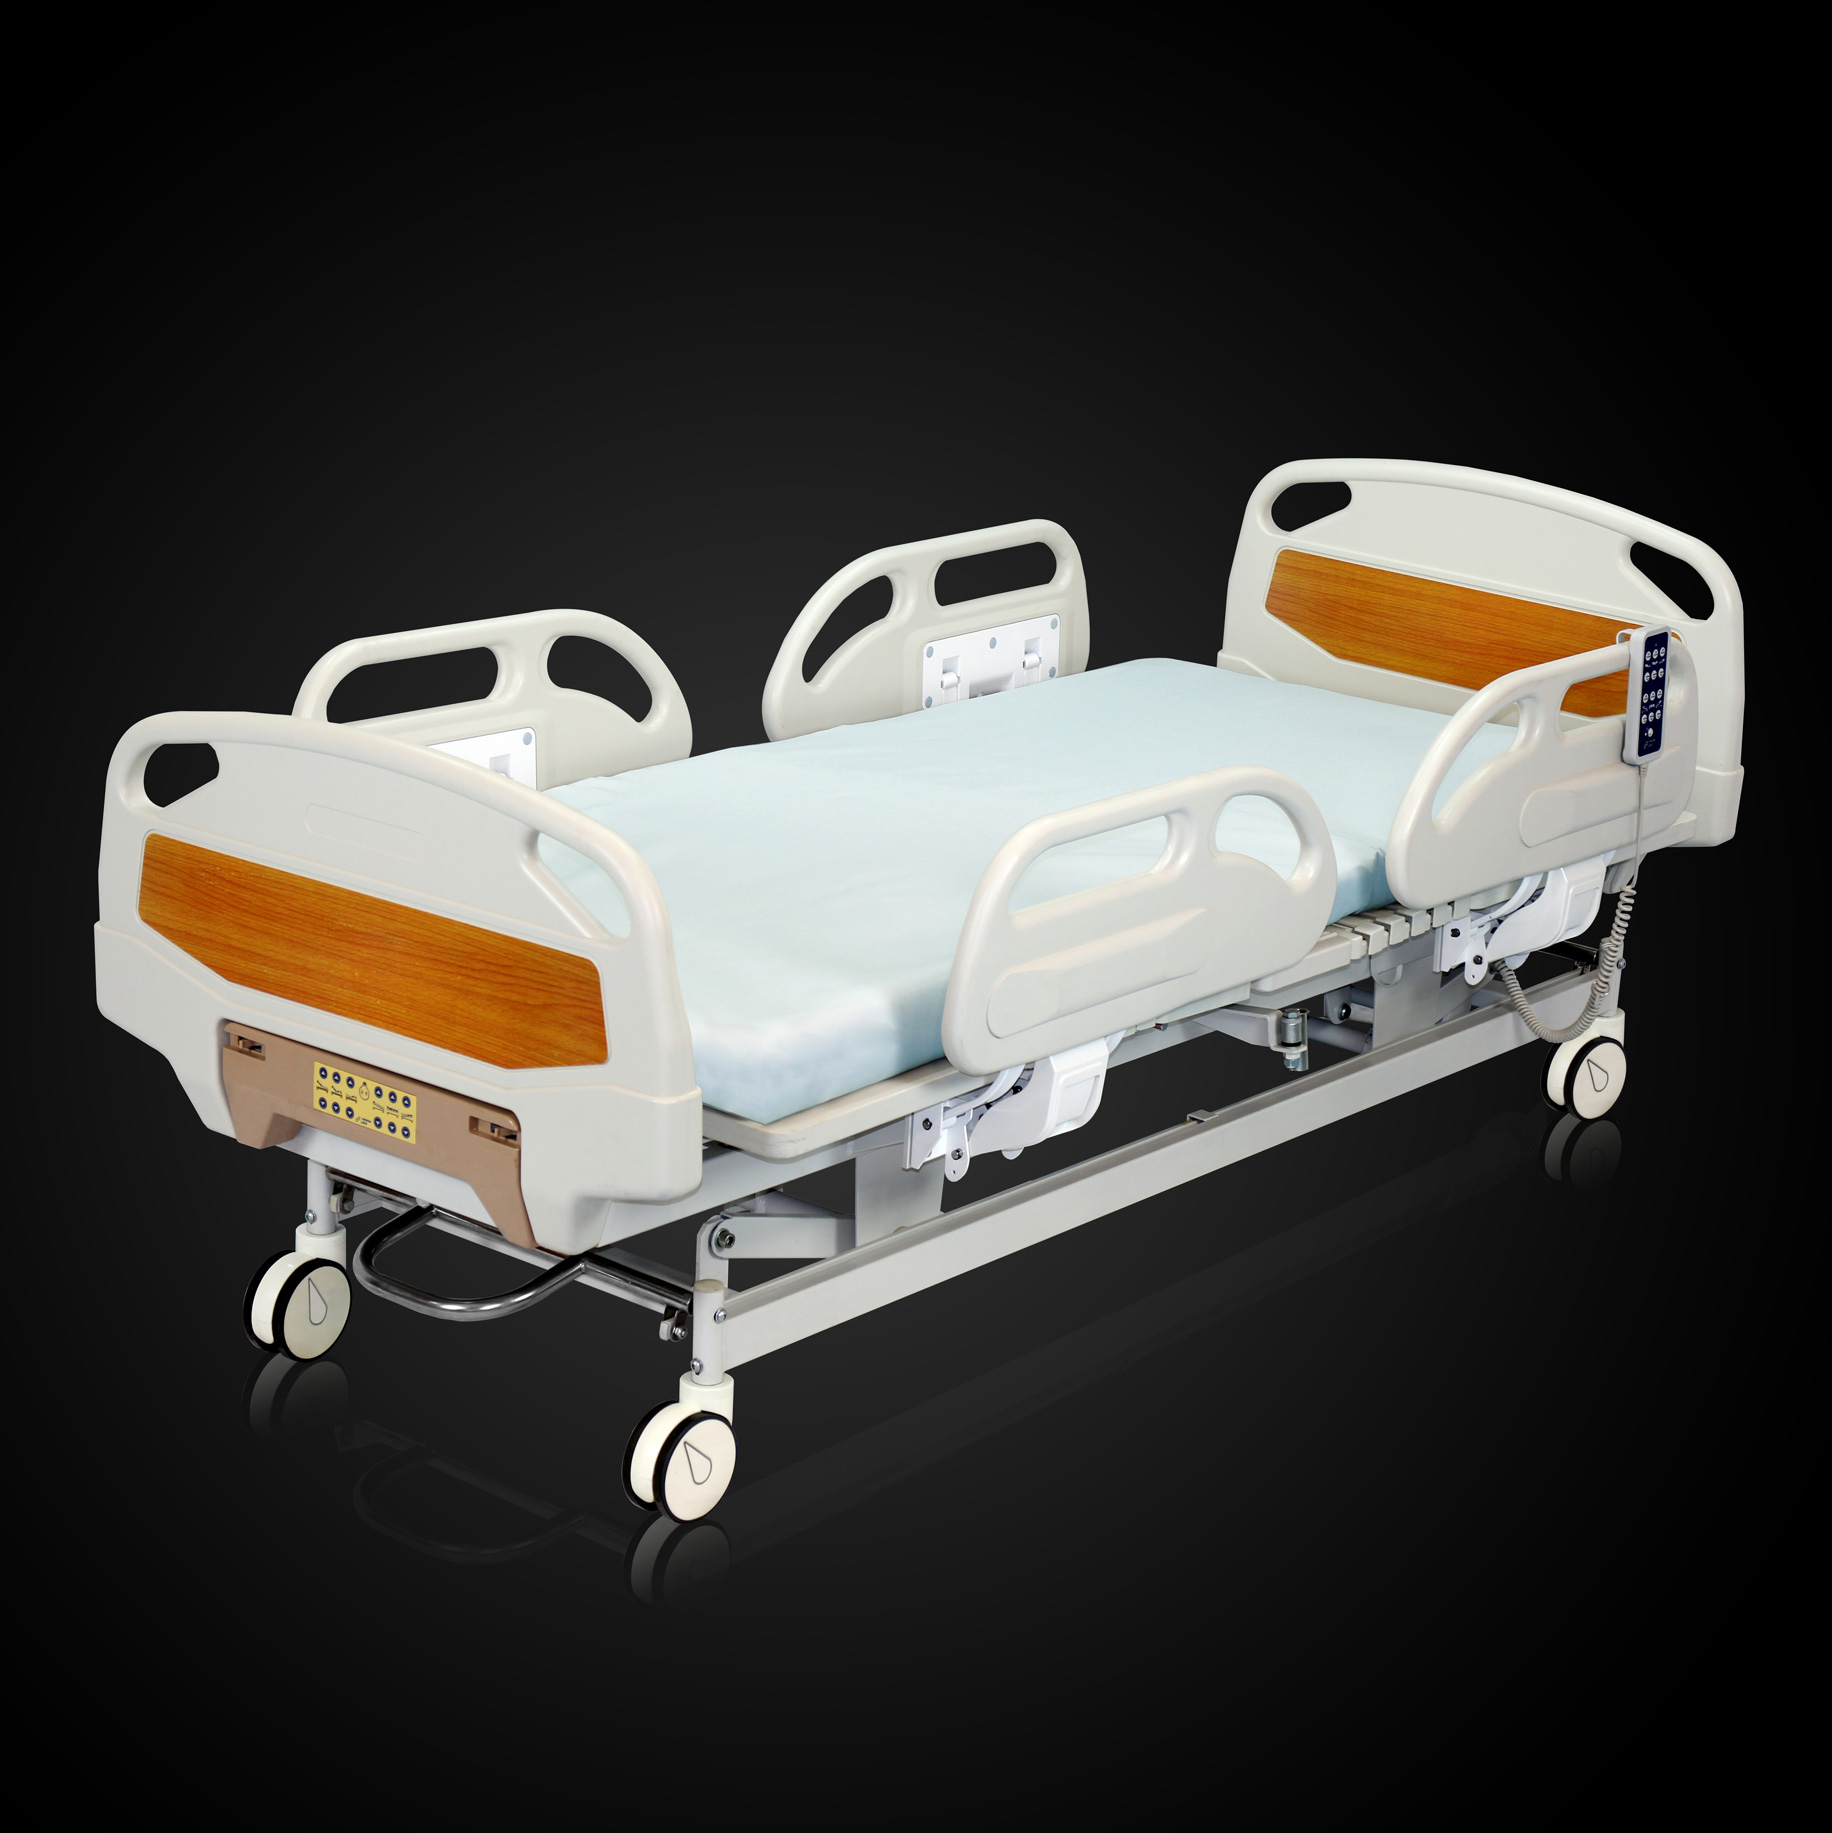 ICU/CCU beds